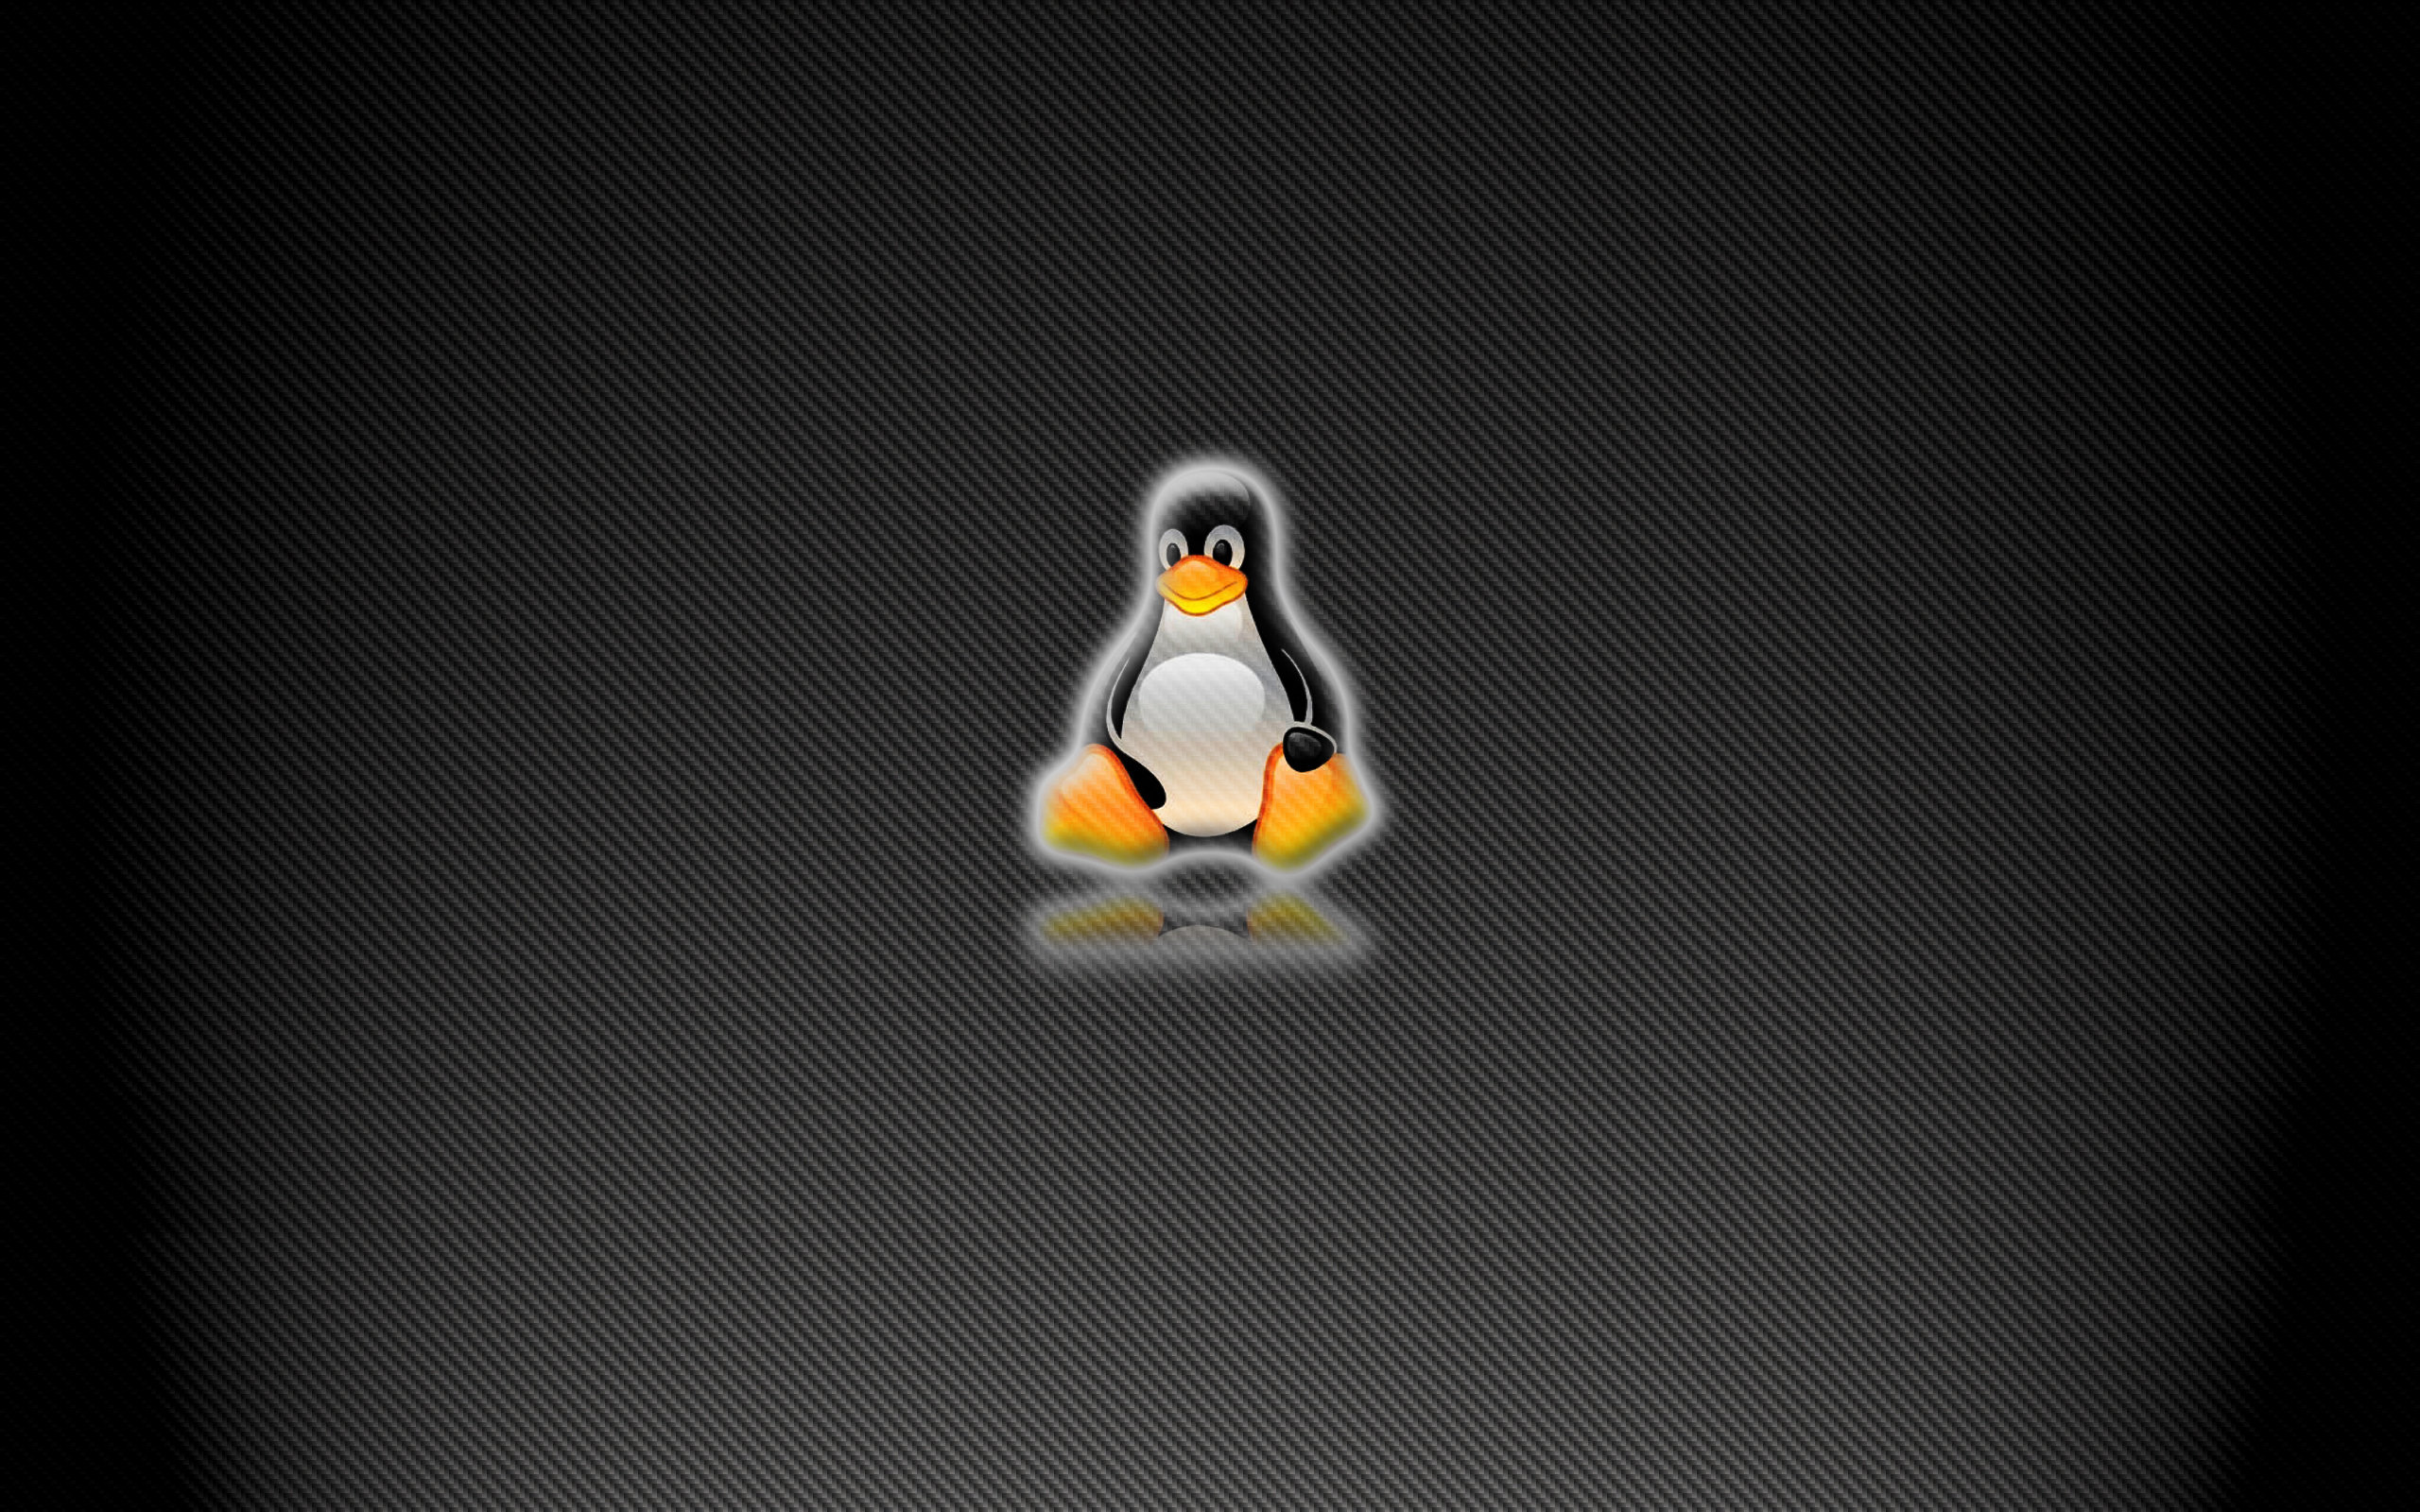 Vk linux. Заставка Linux. Фон рабочего стола Linux. Пингвин линукс. Рабочий стол операционной системы Linux.